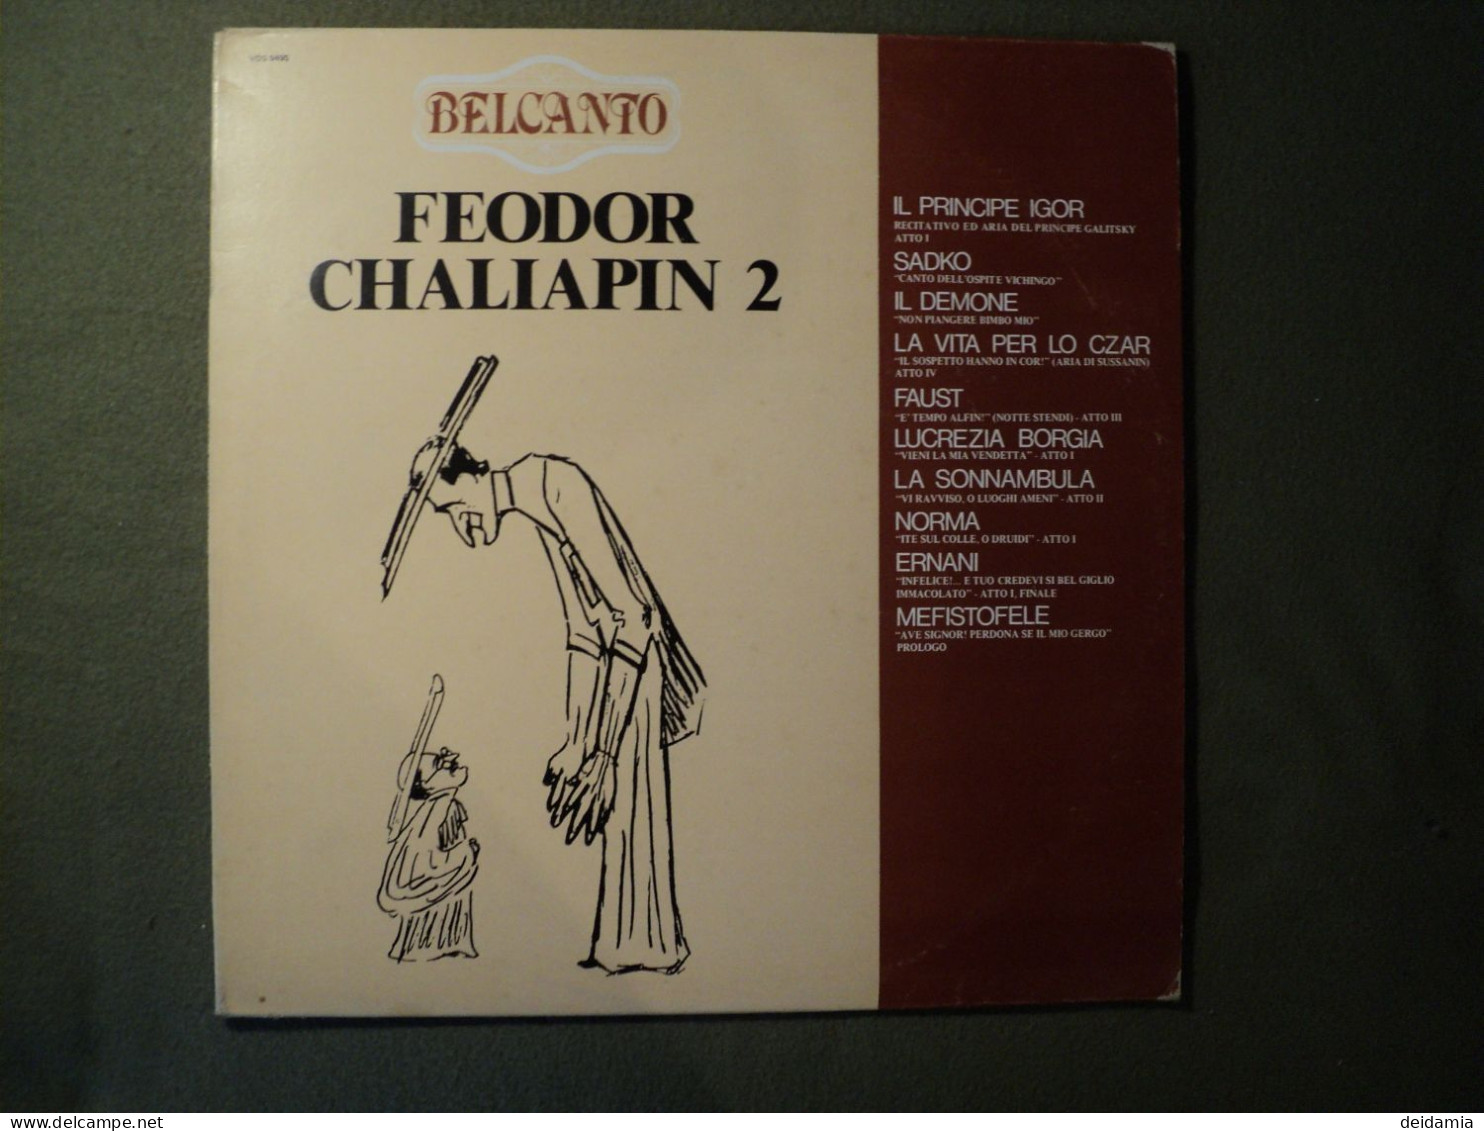 33 TOURS FEODOR CHALIAPIN. 1980. VOLUME 2. BELCANTO. VDS 9495 IL PRINCIPE IGOR / SADKO / IL DEMONE / LA VITA PER LO CZAR - Other - Italian Music